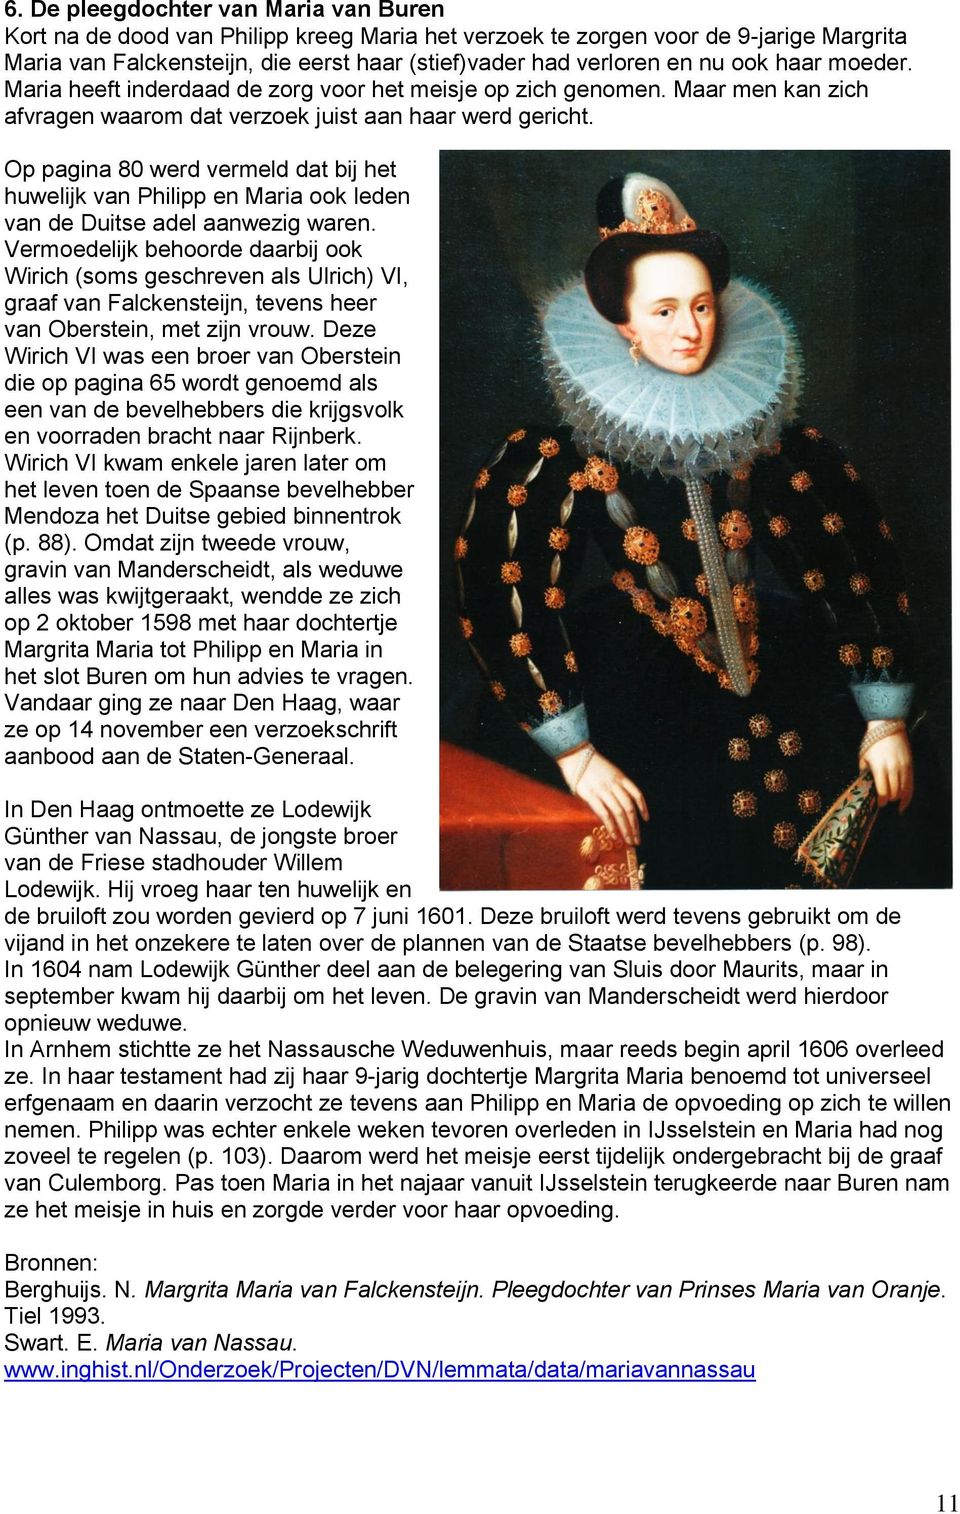 Op pagina 80 werd vermeld dat bij het huwelijk van Philipp en Maria ook leden van de Duitse adel aanwezig waren.